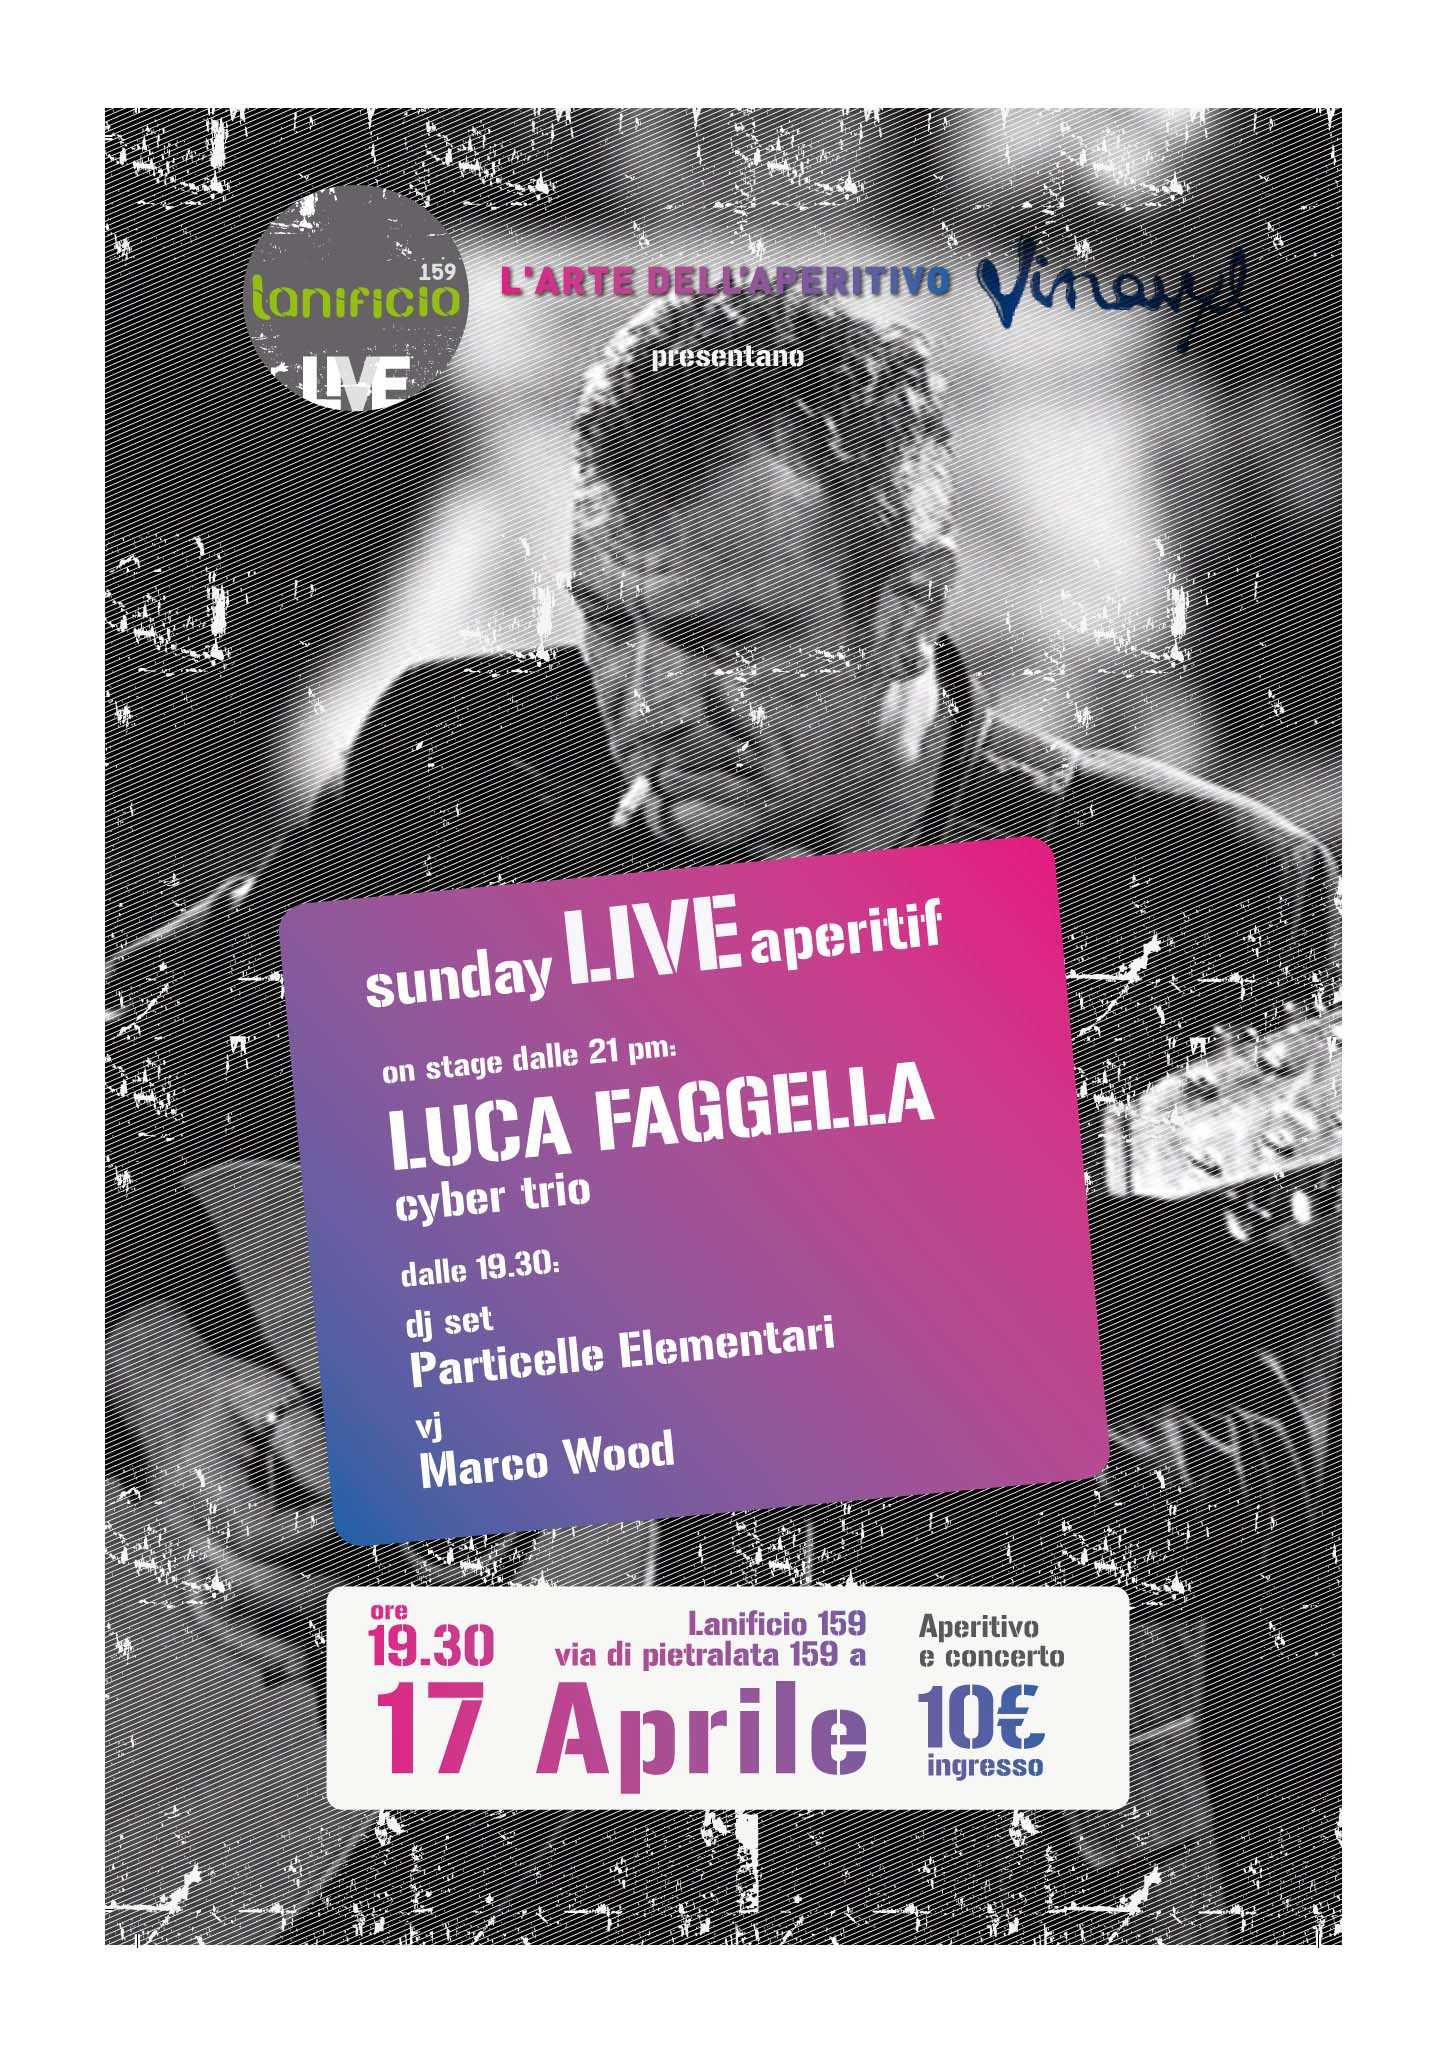 Sunday live Aperitif Luca Faggella Cyber trio live 17-04 @ lanificio 159